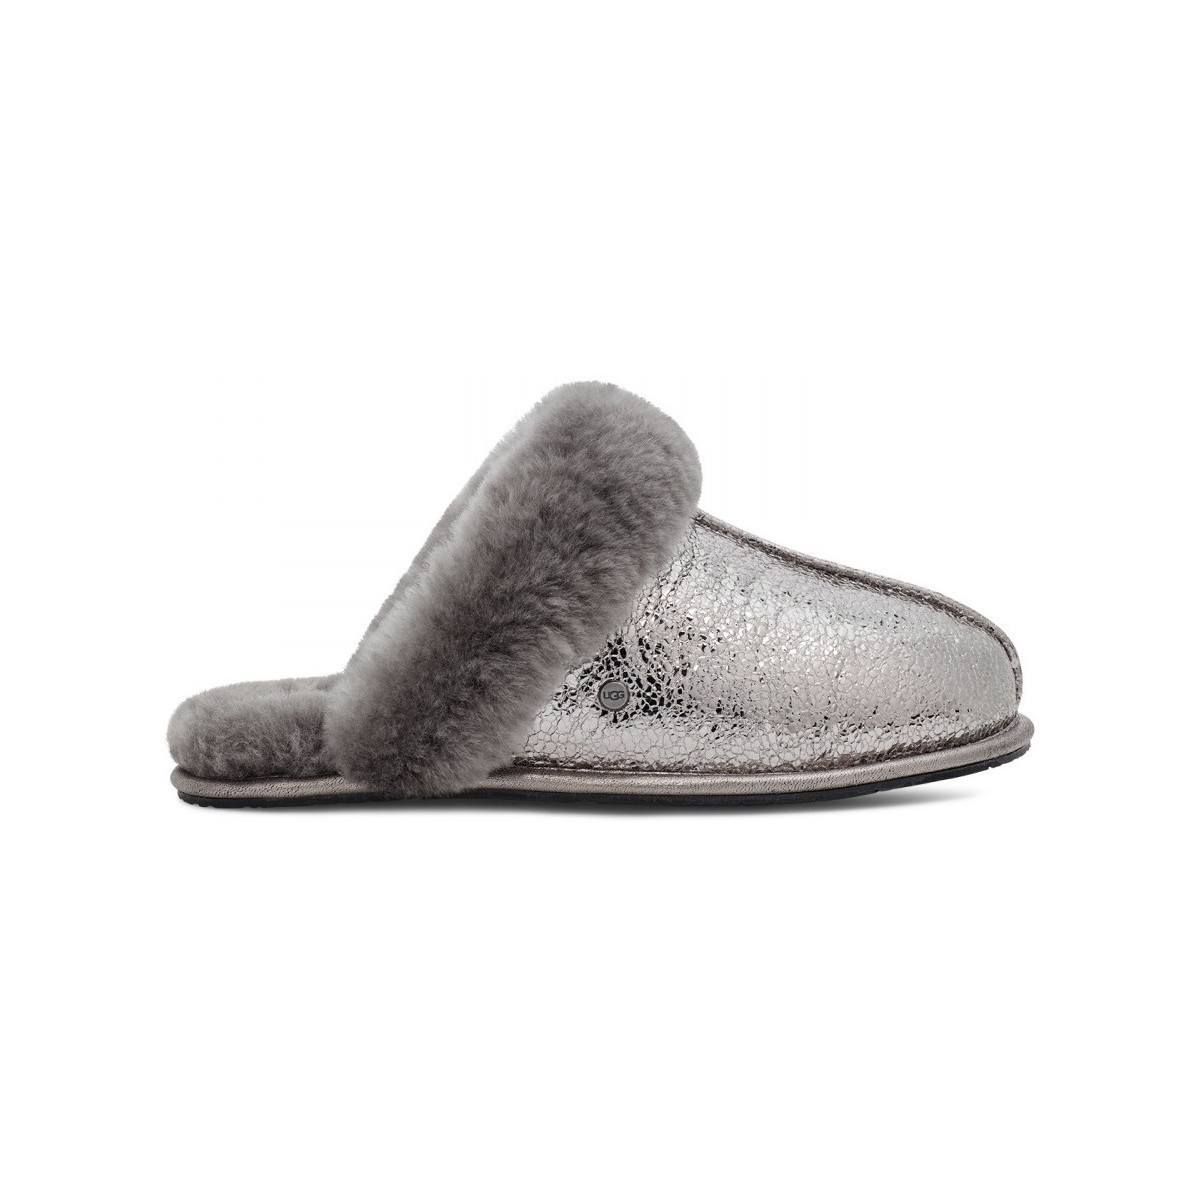 Schuhe Damen Hausschuhe UGG W scuffette ii metallic sparkle Grau